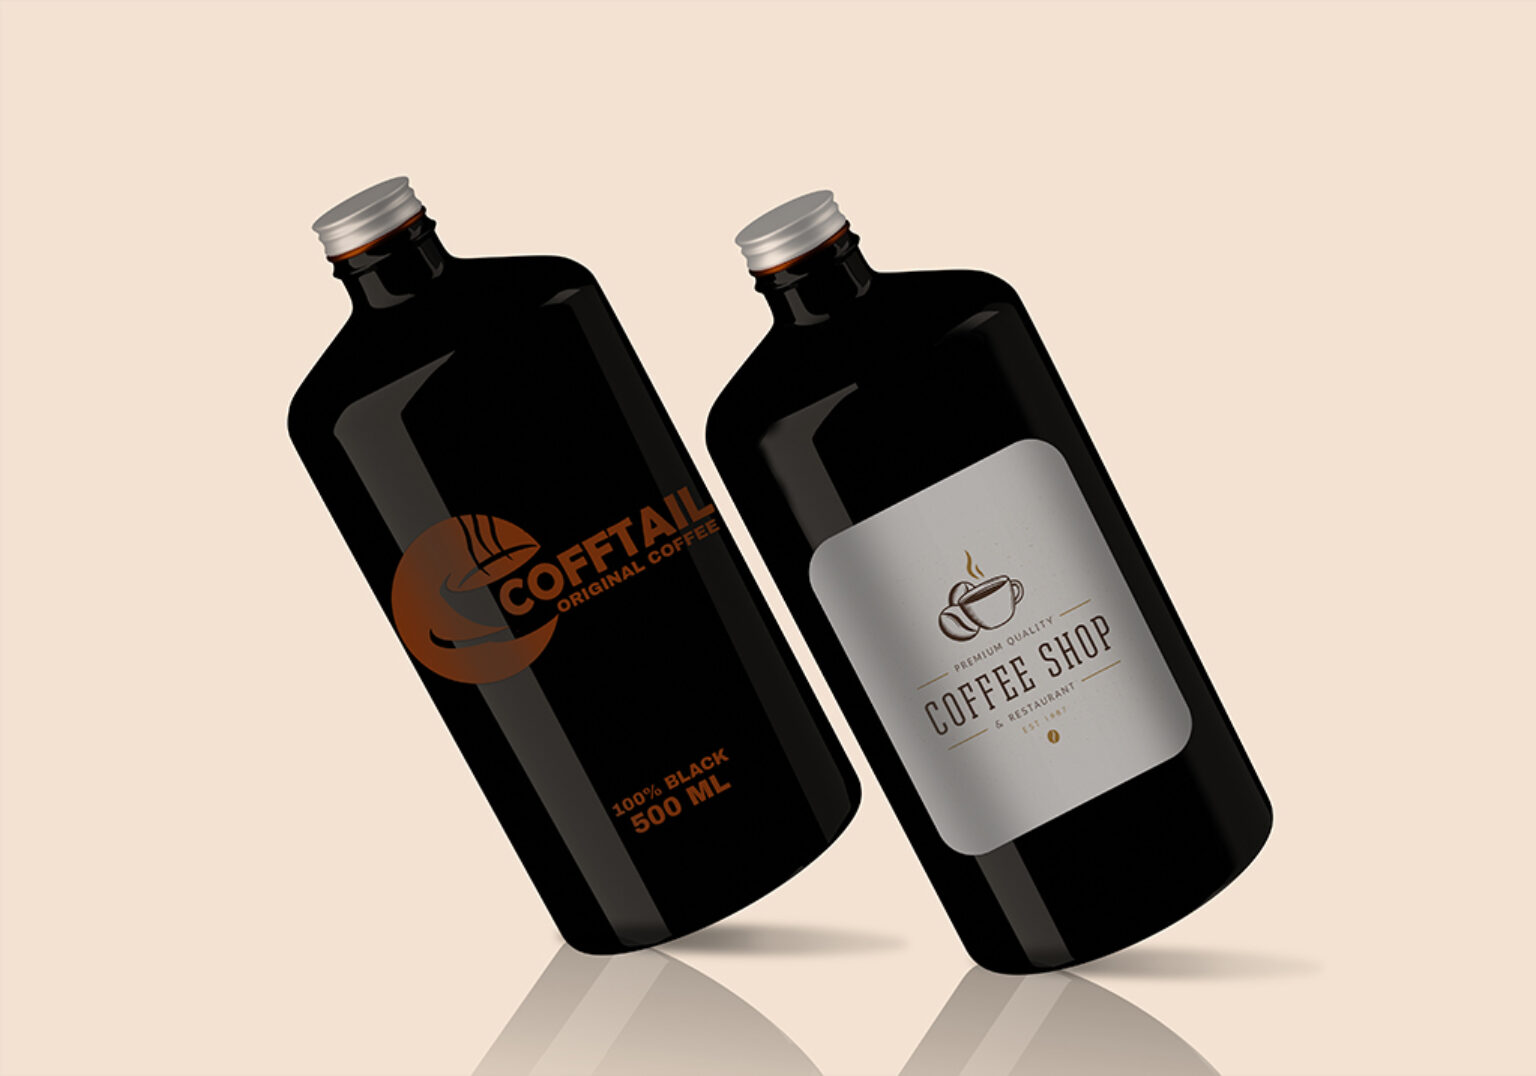 Download Big Coffee Bottle Mockup Set | Mockup World